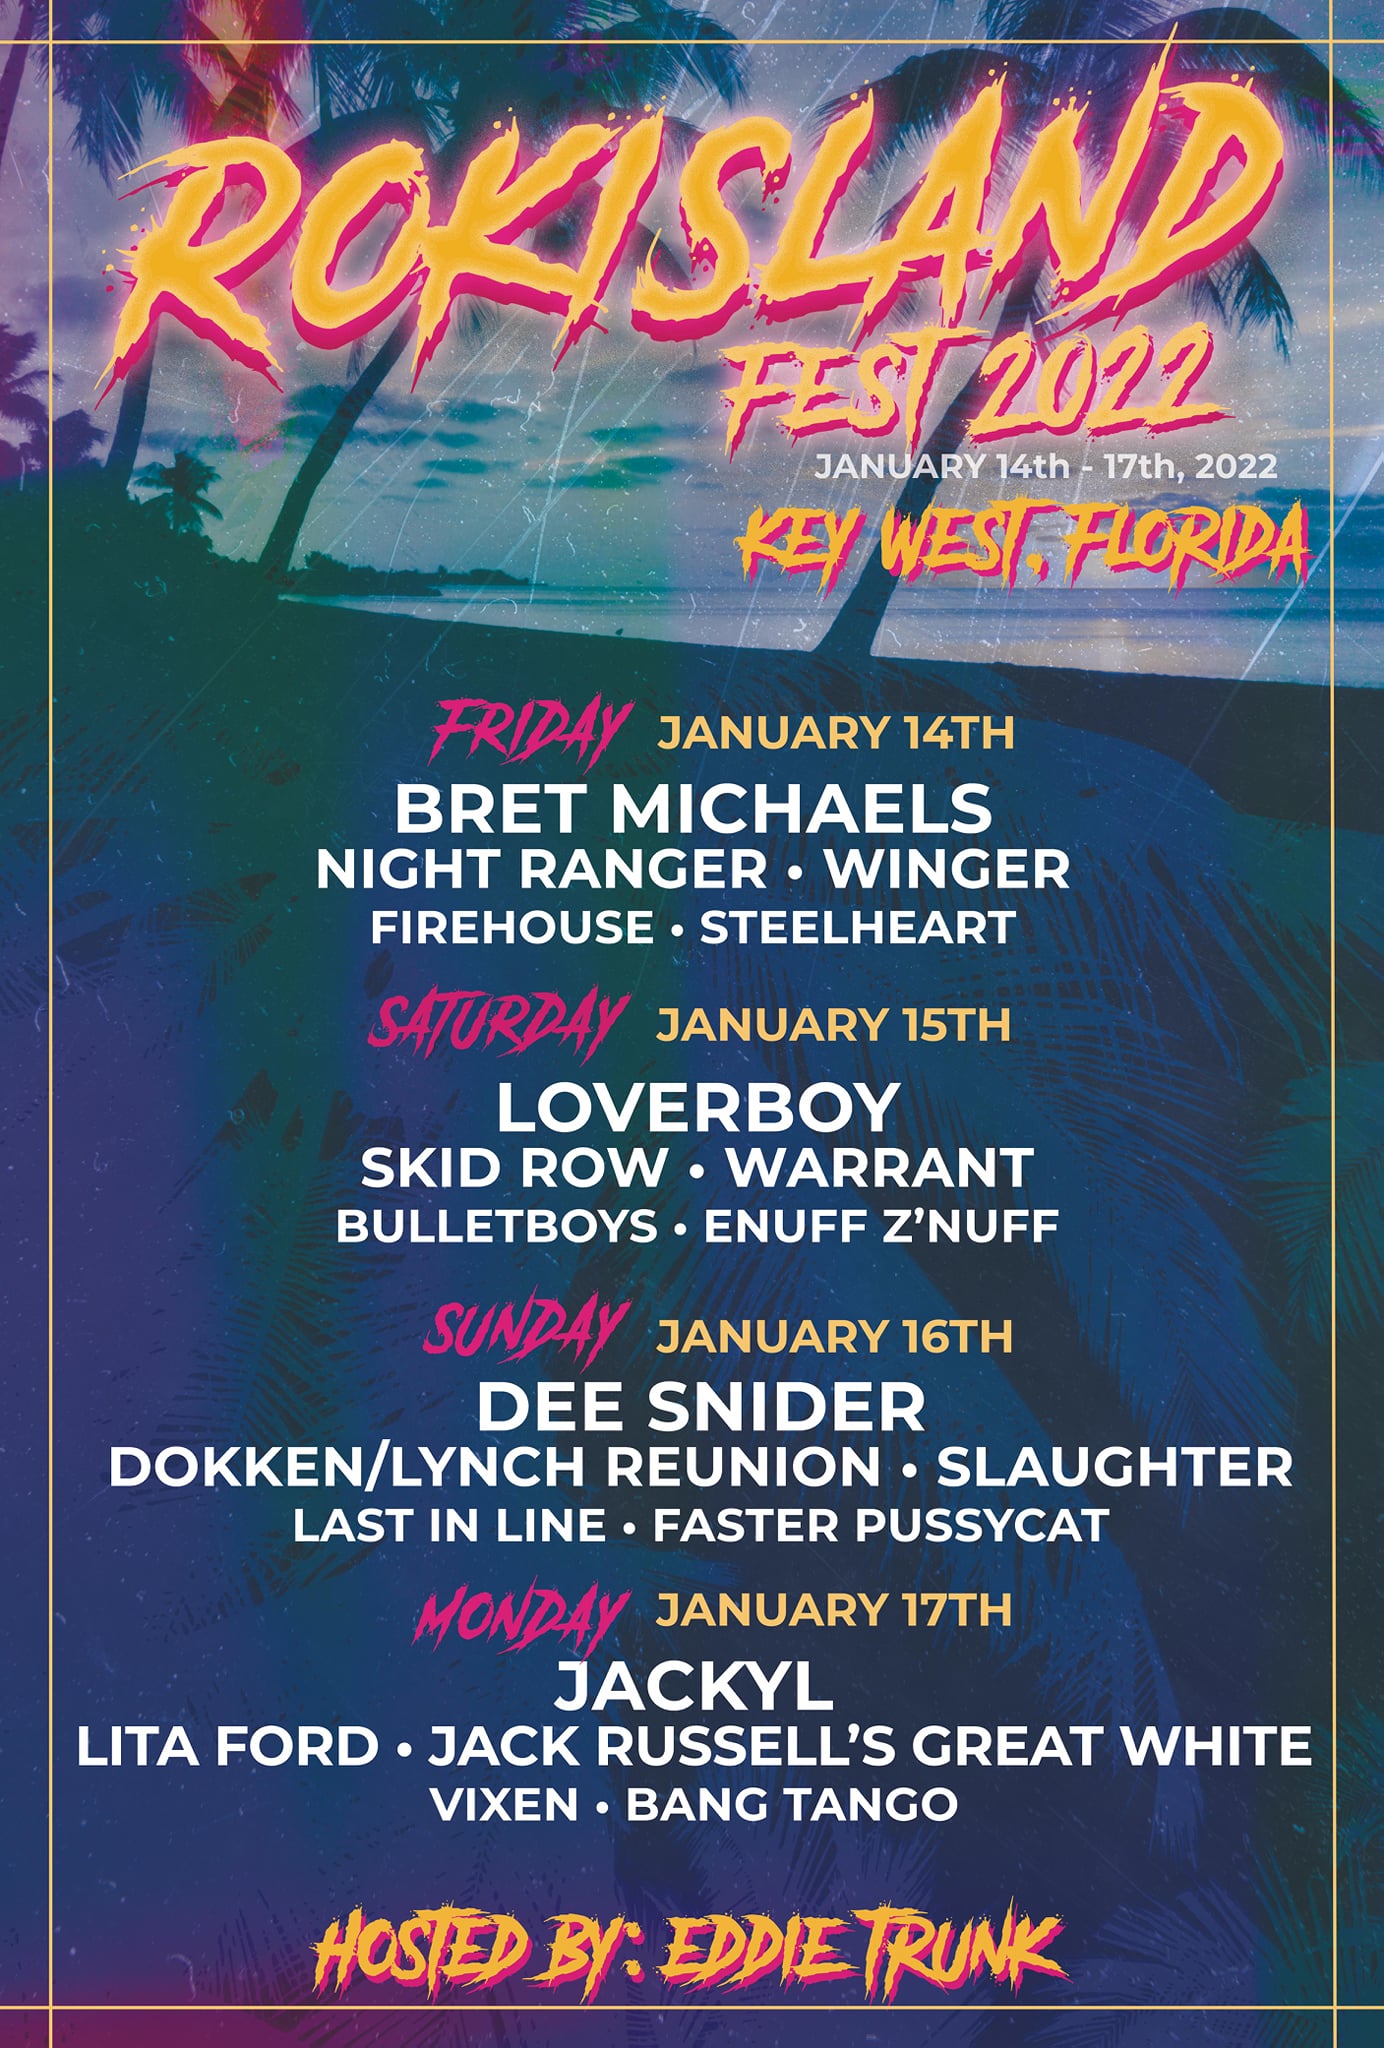 RokIsland Fest 2022 lineup poster